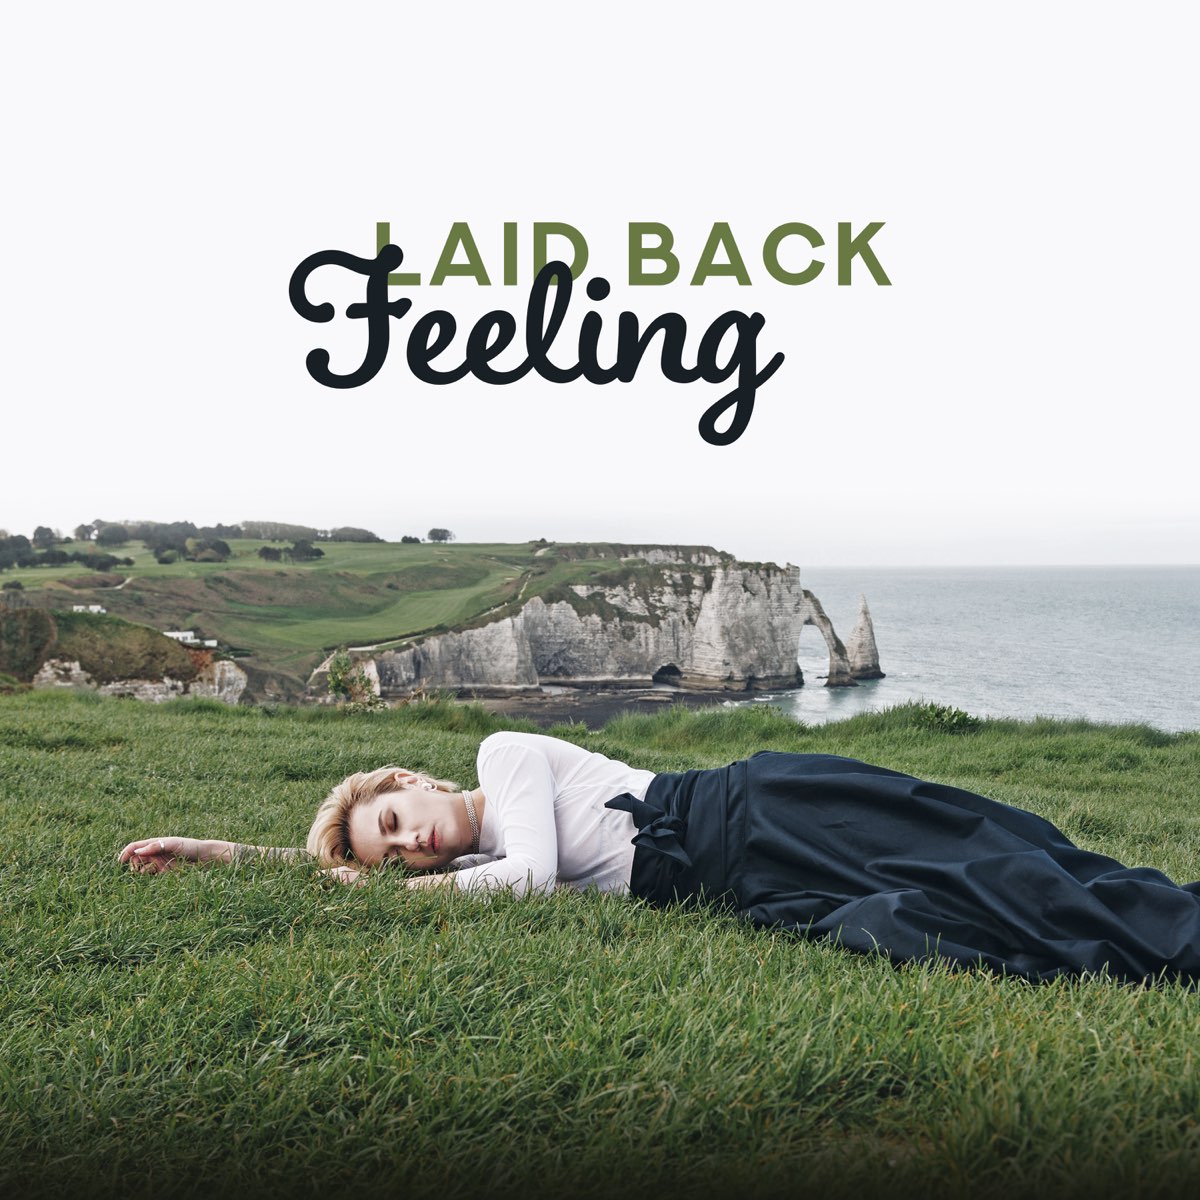 Feeling бак. Laid back. Laid back - Healing feeling (2019). Feelings back olivia